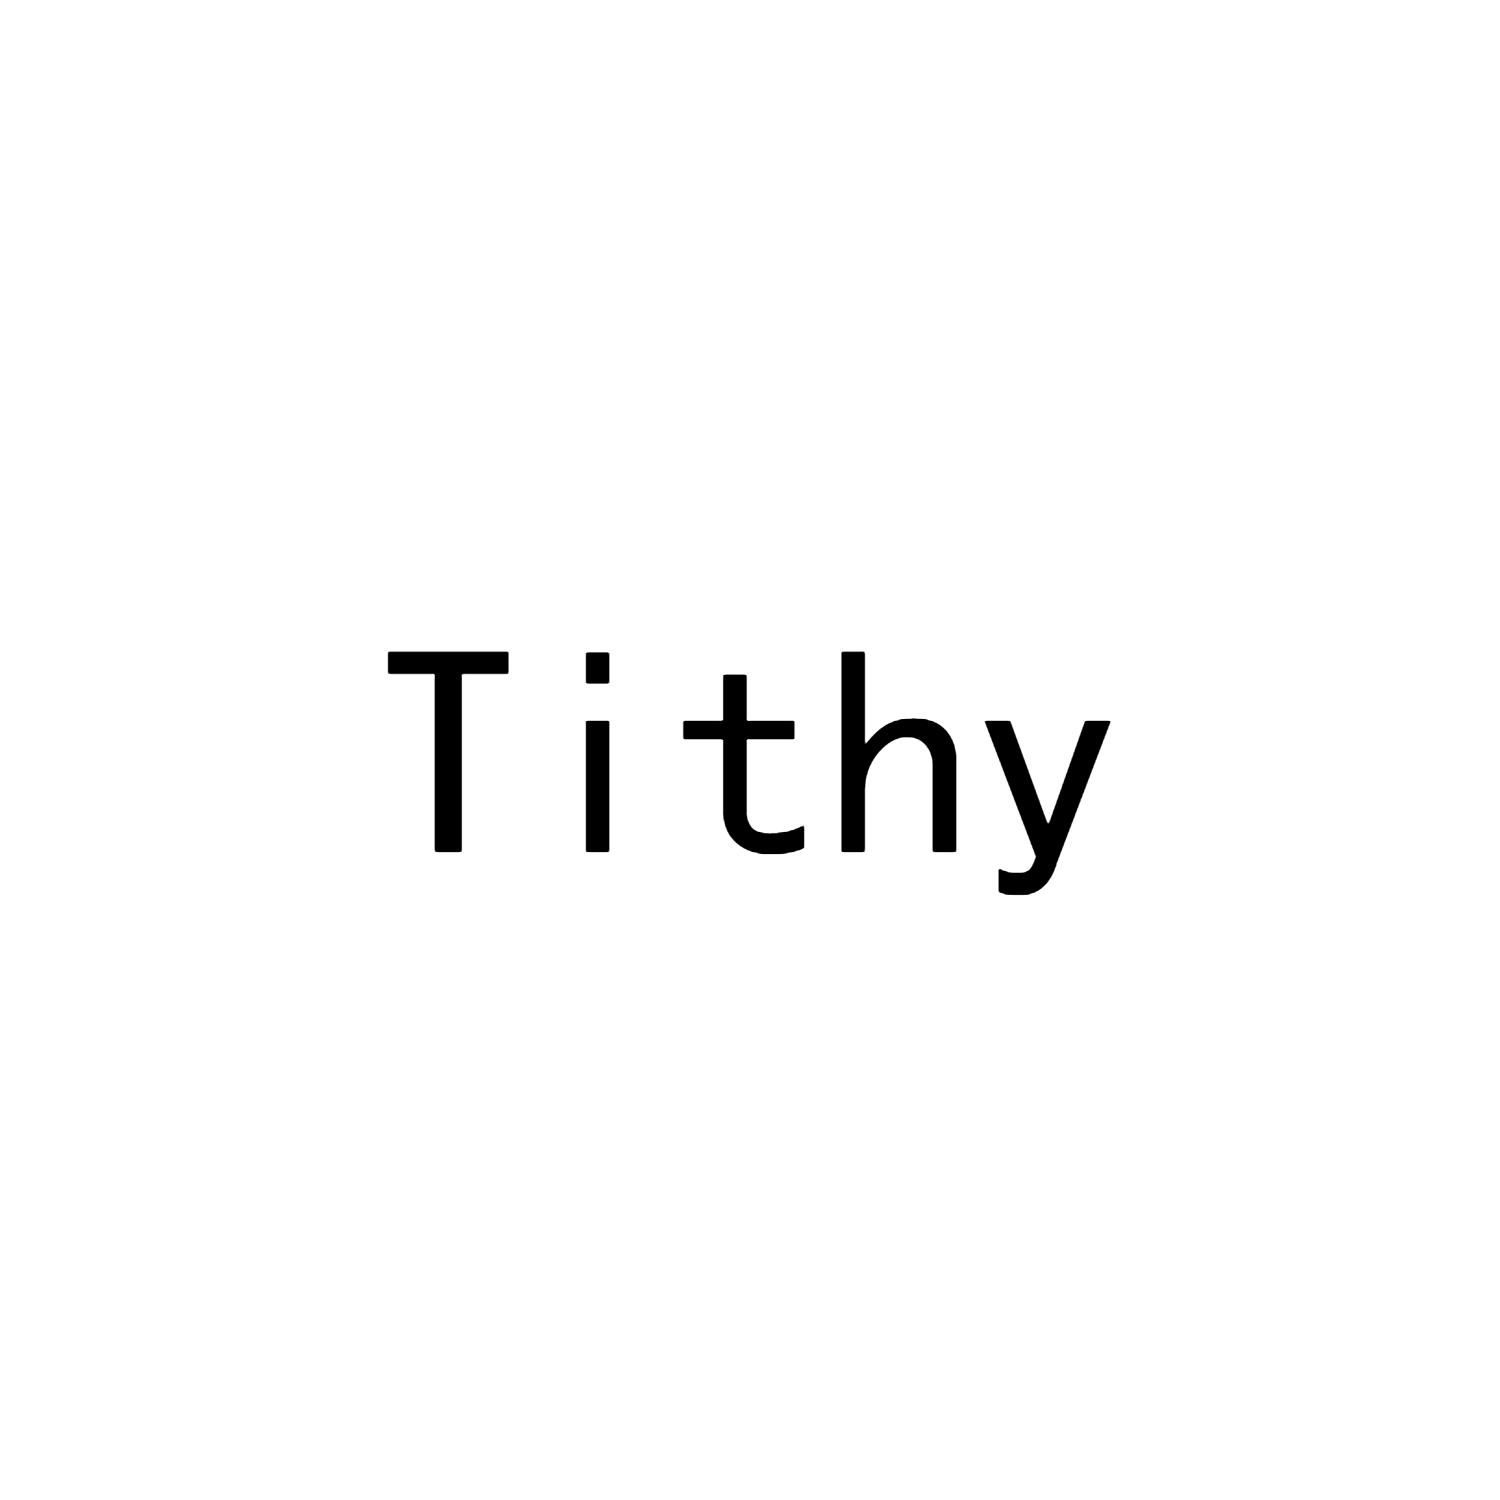 TITHY